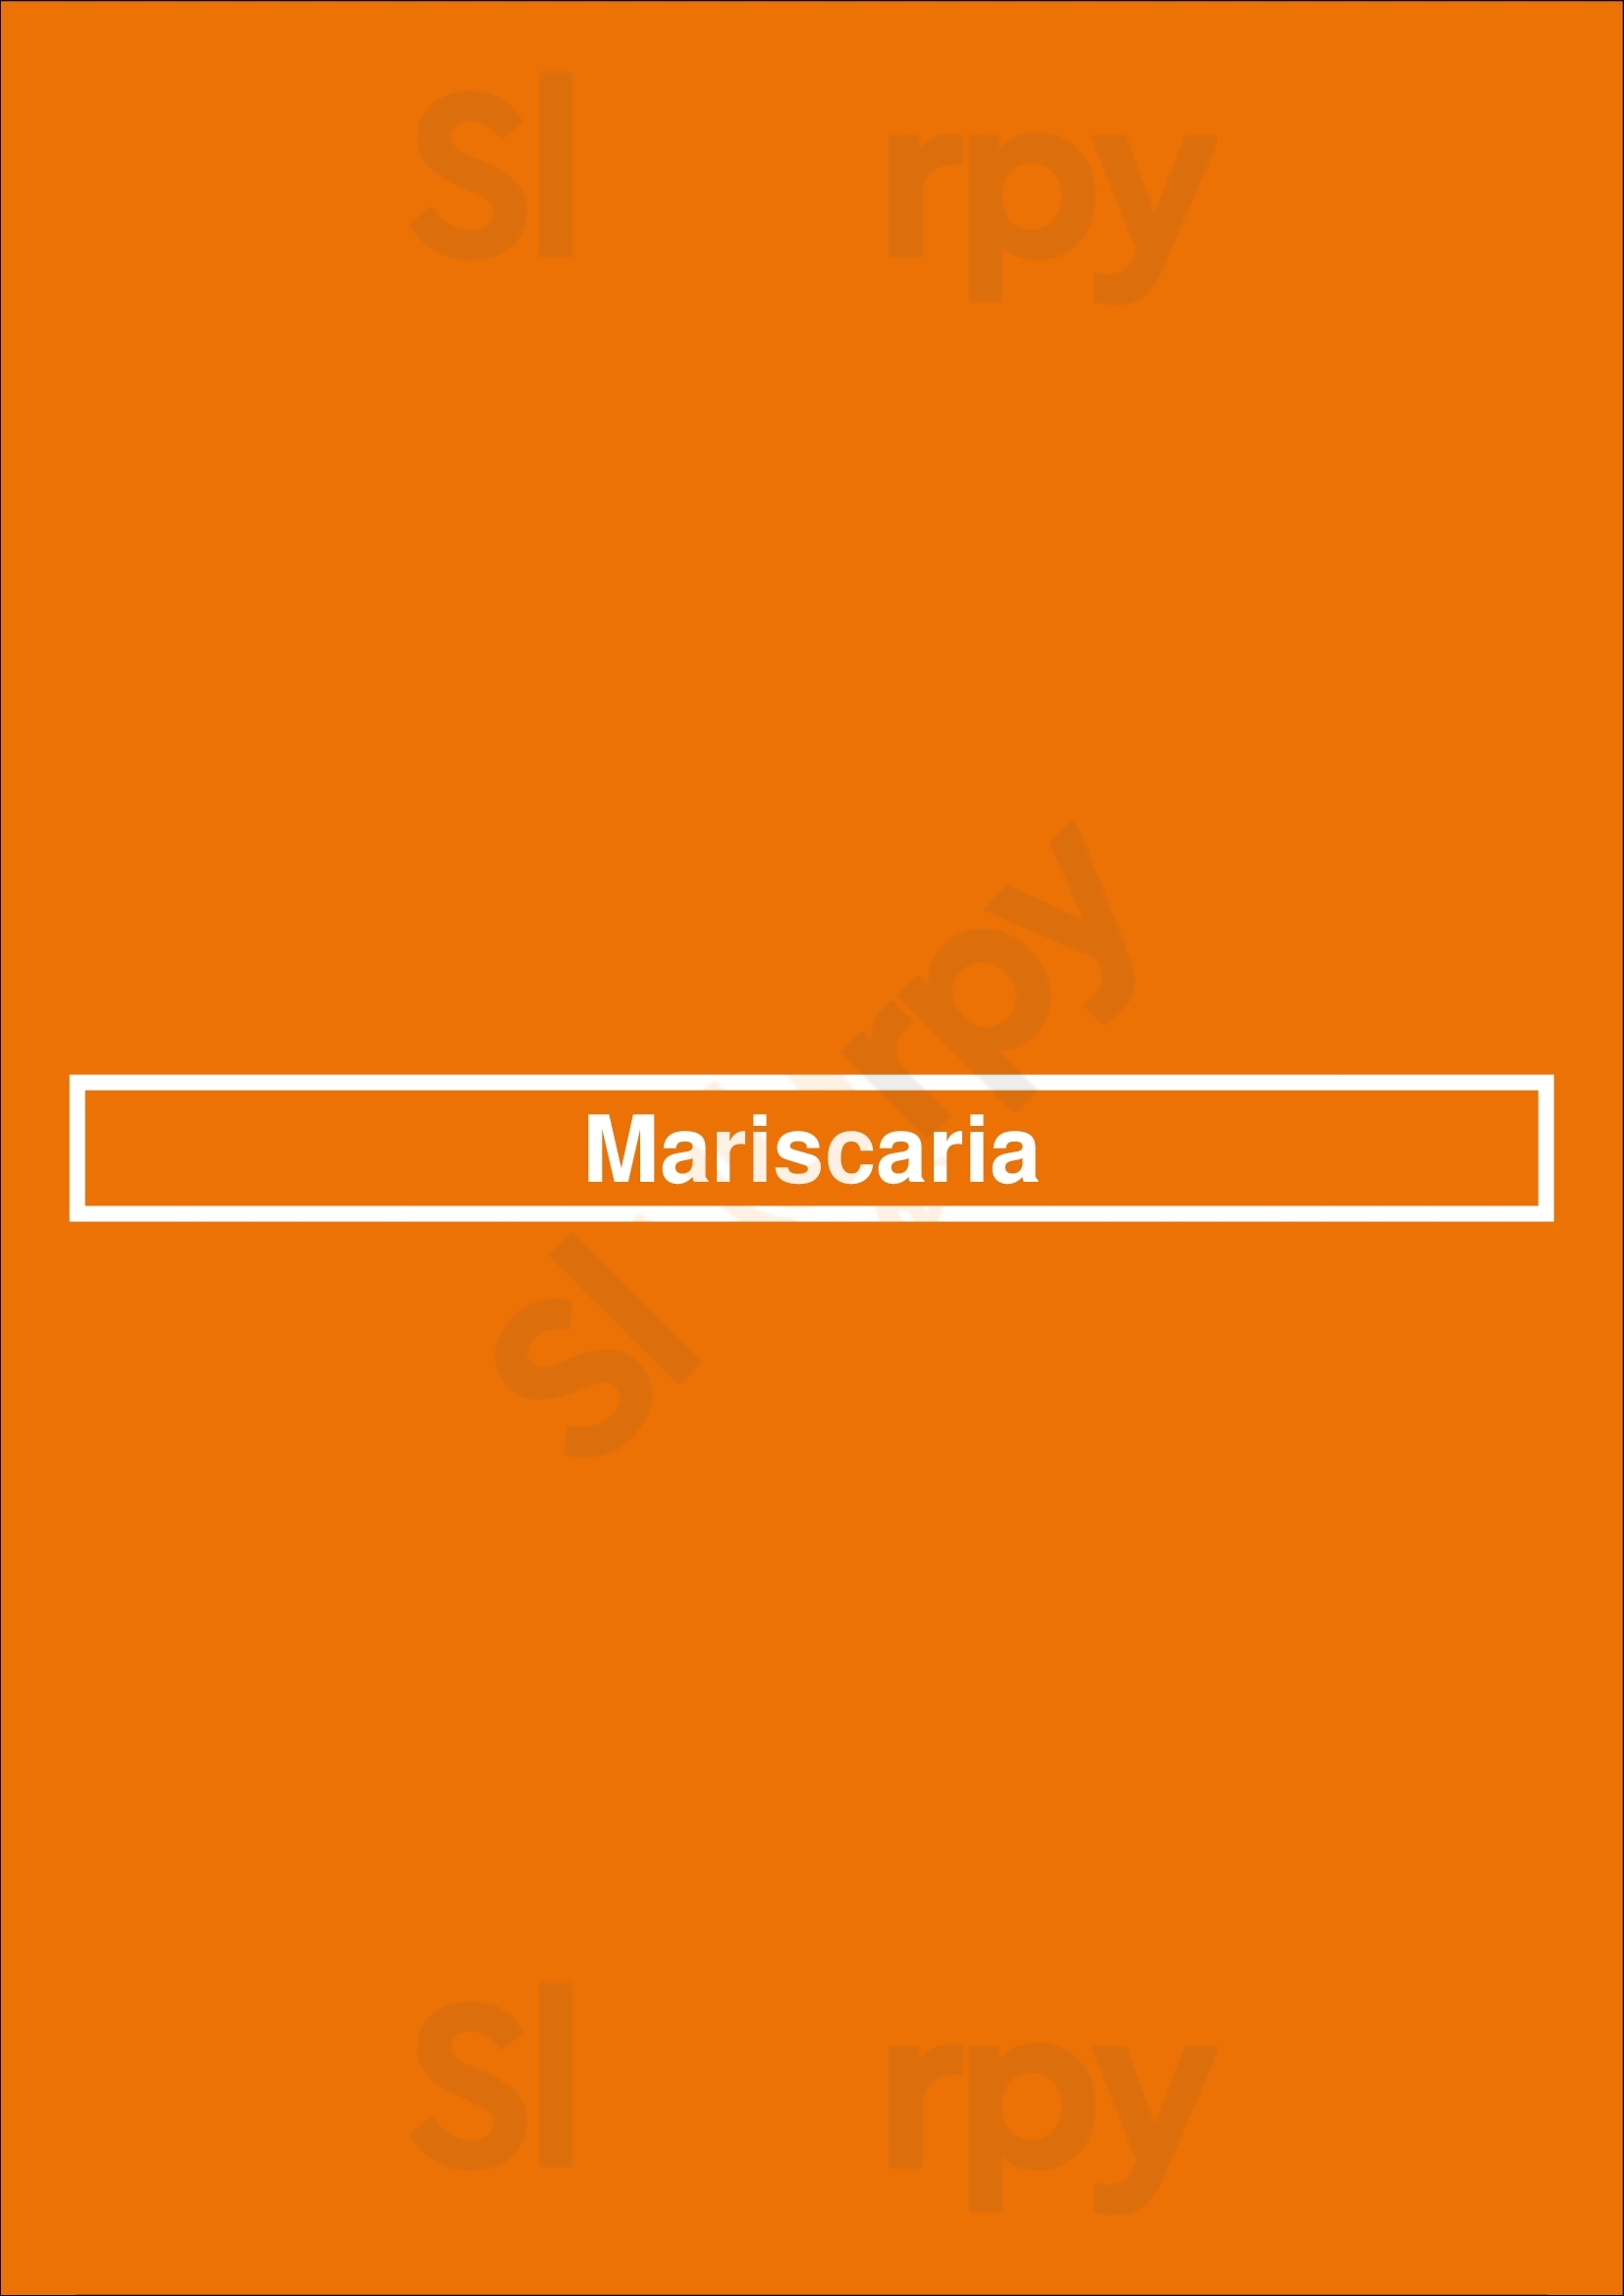 Mariscaria Cascais Menu - 1